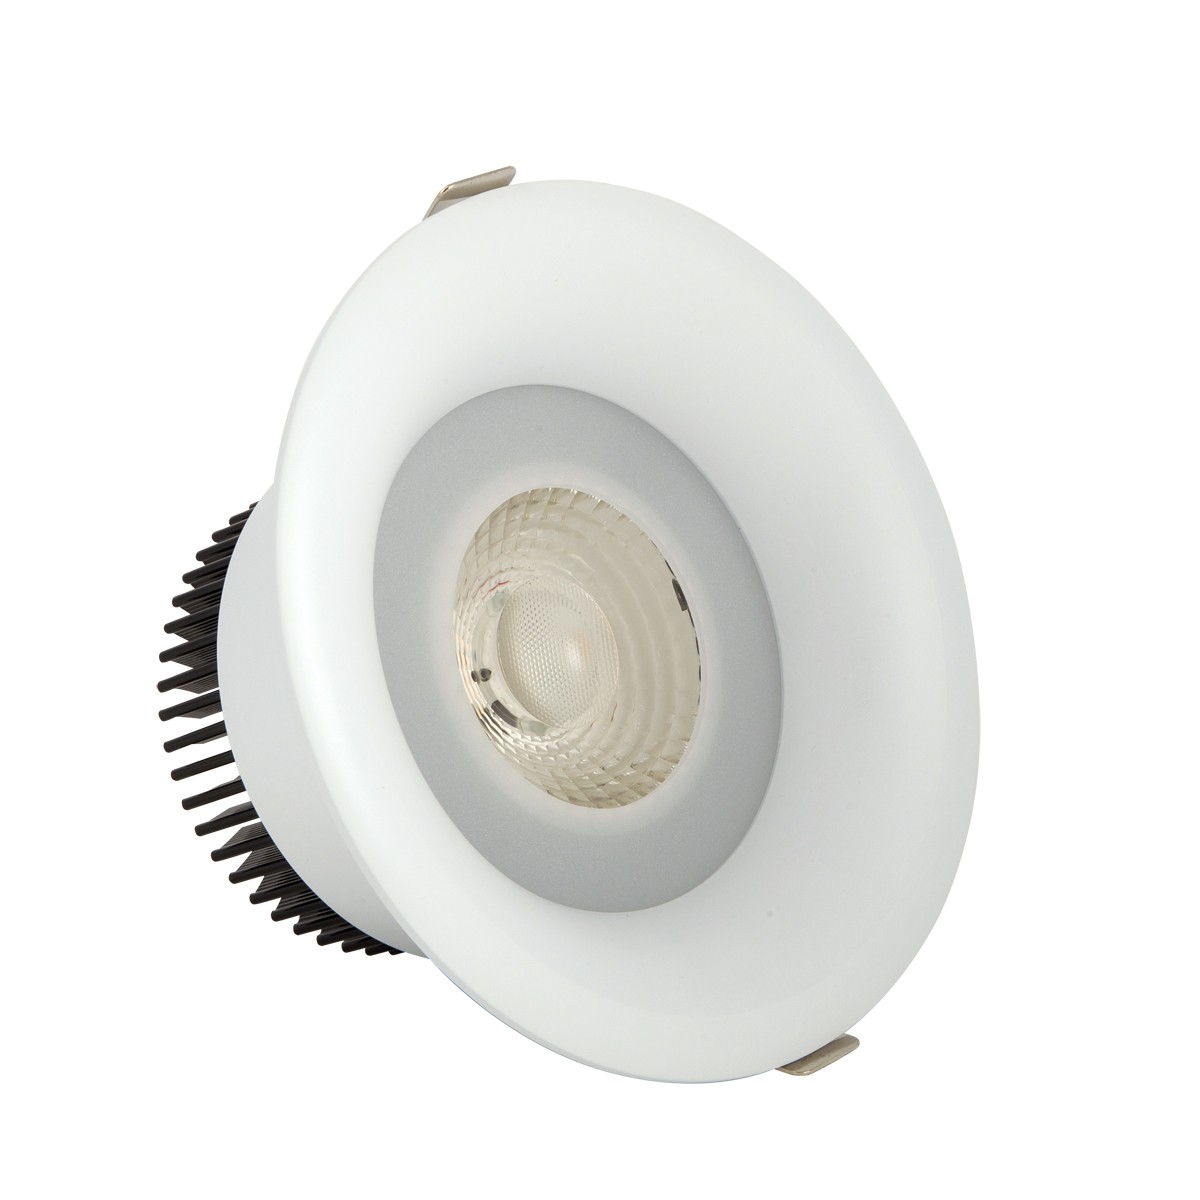 Φωτιστικό downlight στρογγυλό  λευκού χρώματος 15W 3000K 1350 lumen με ενσωματωμένο λαμπτήρα 24D VK/04149/W/W/24